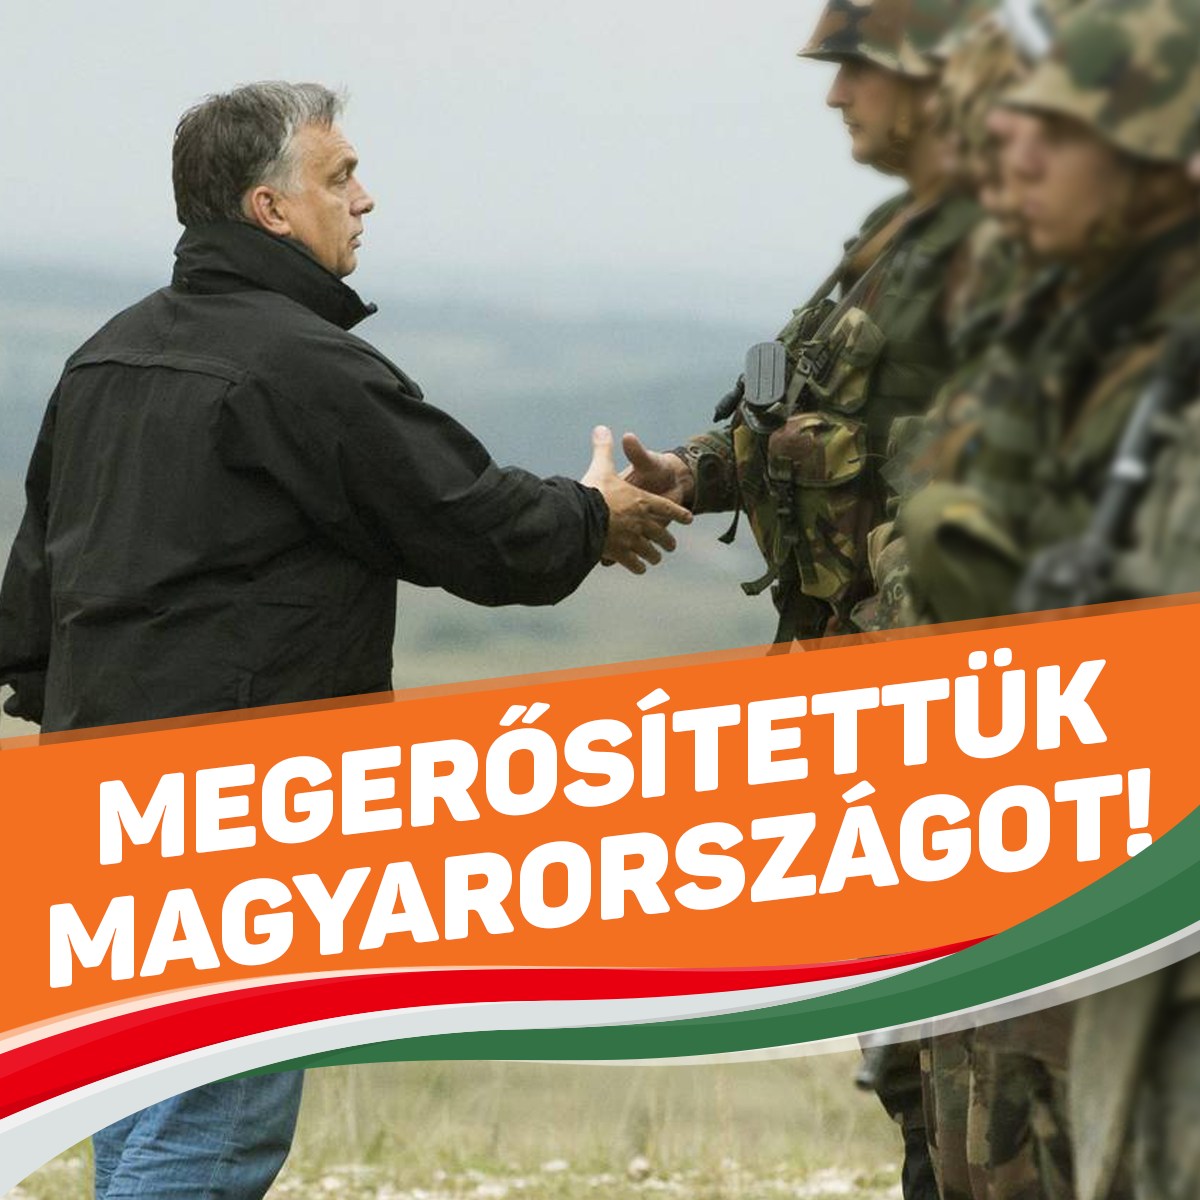 Ha baj van, hazánkat nekünk kell megvédeni.  Ezért mi megerősítettük Magyarországot.